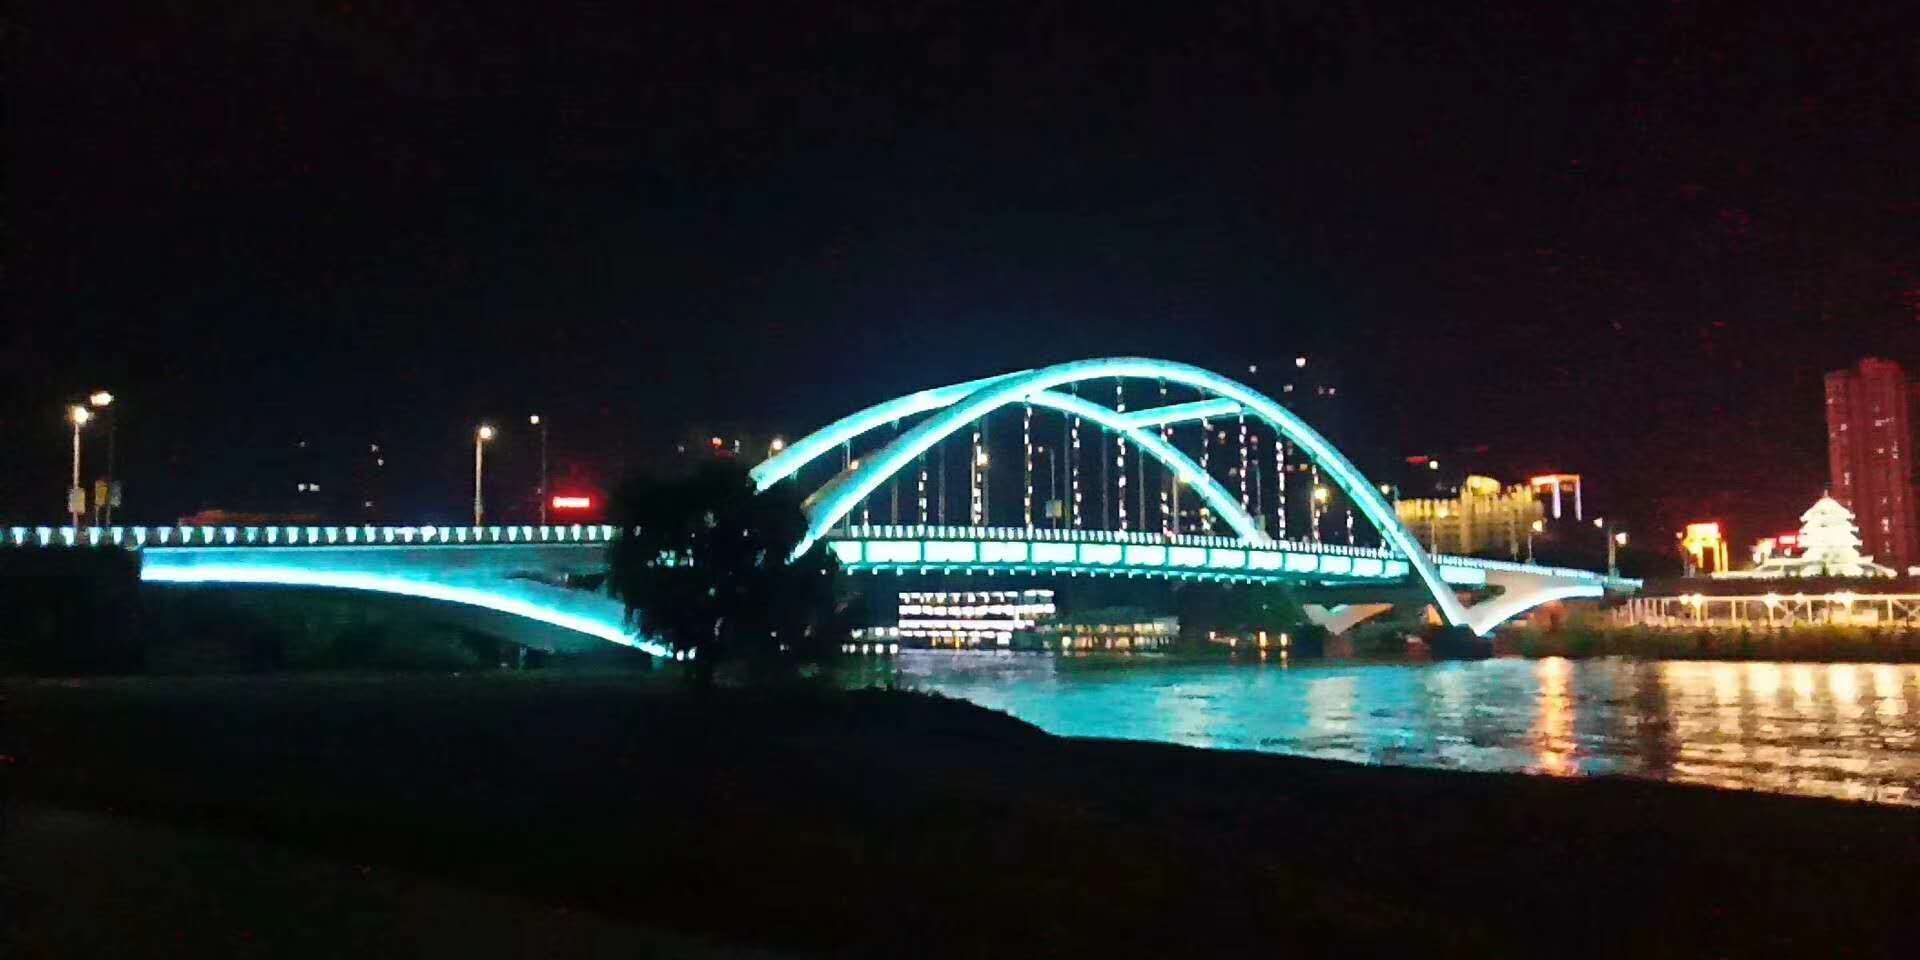 兰州市中山桥亮化工程